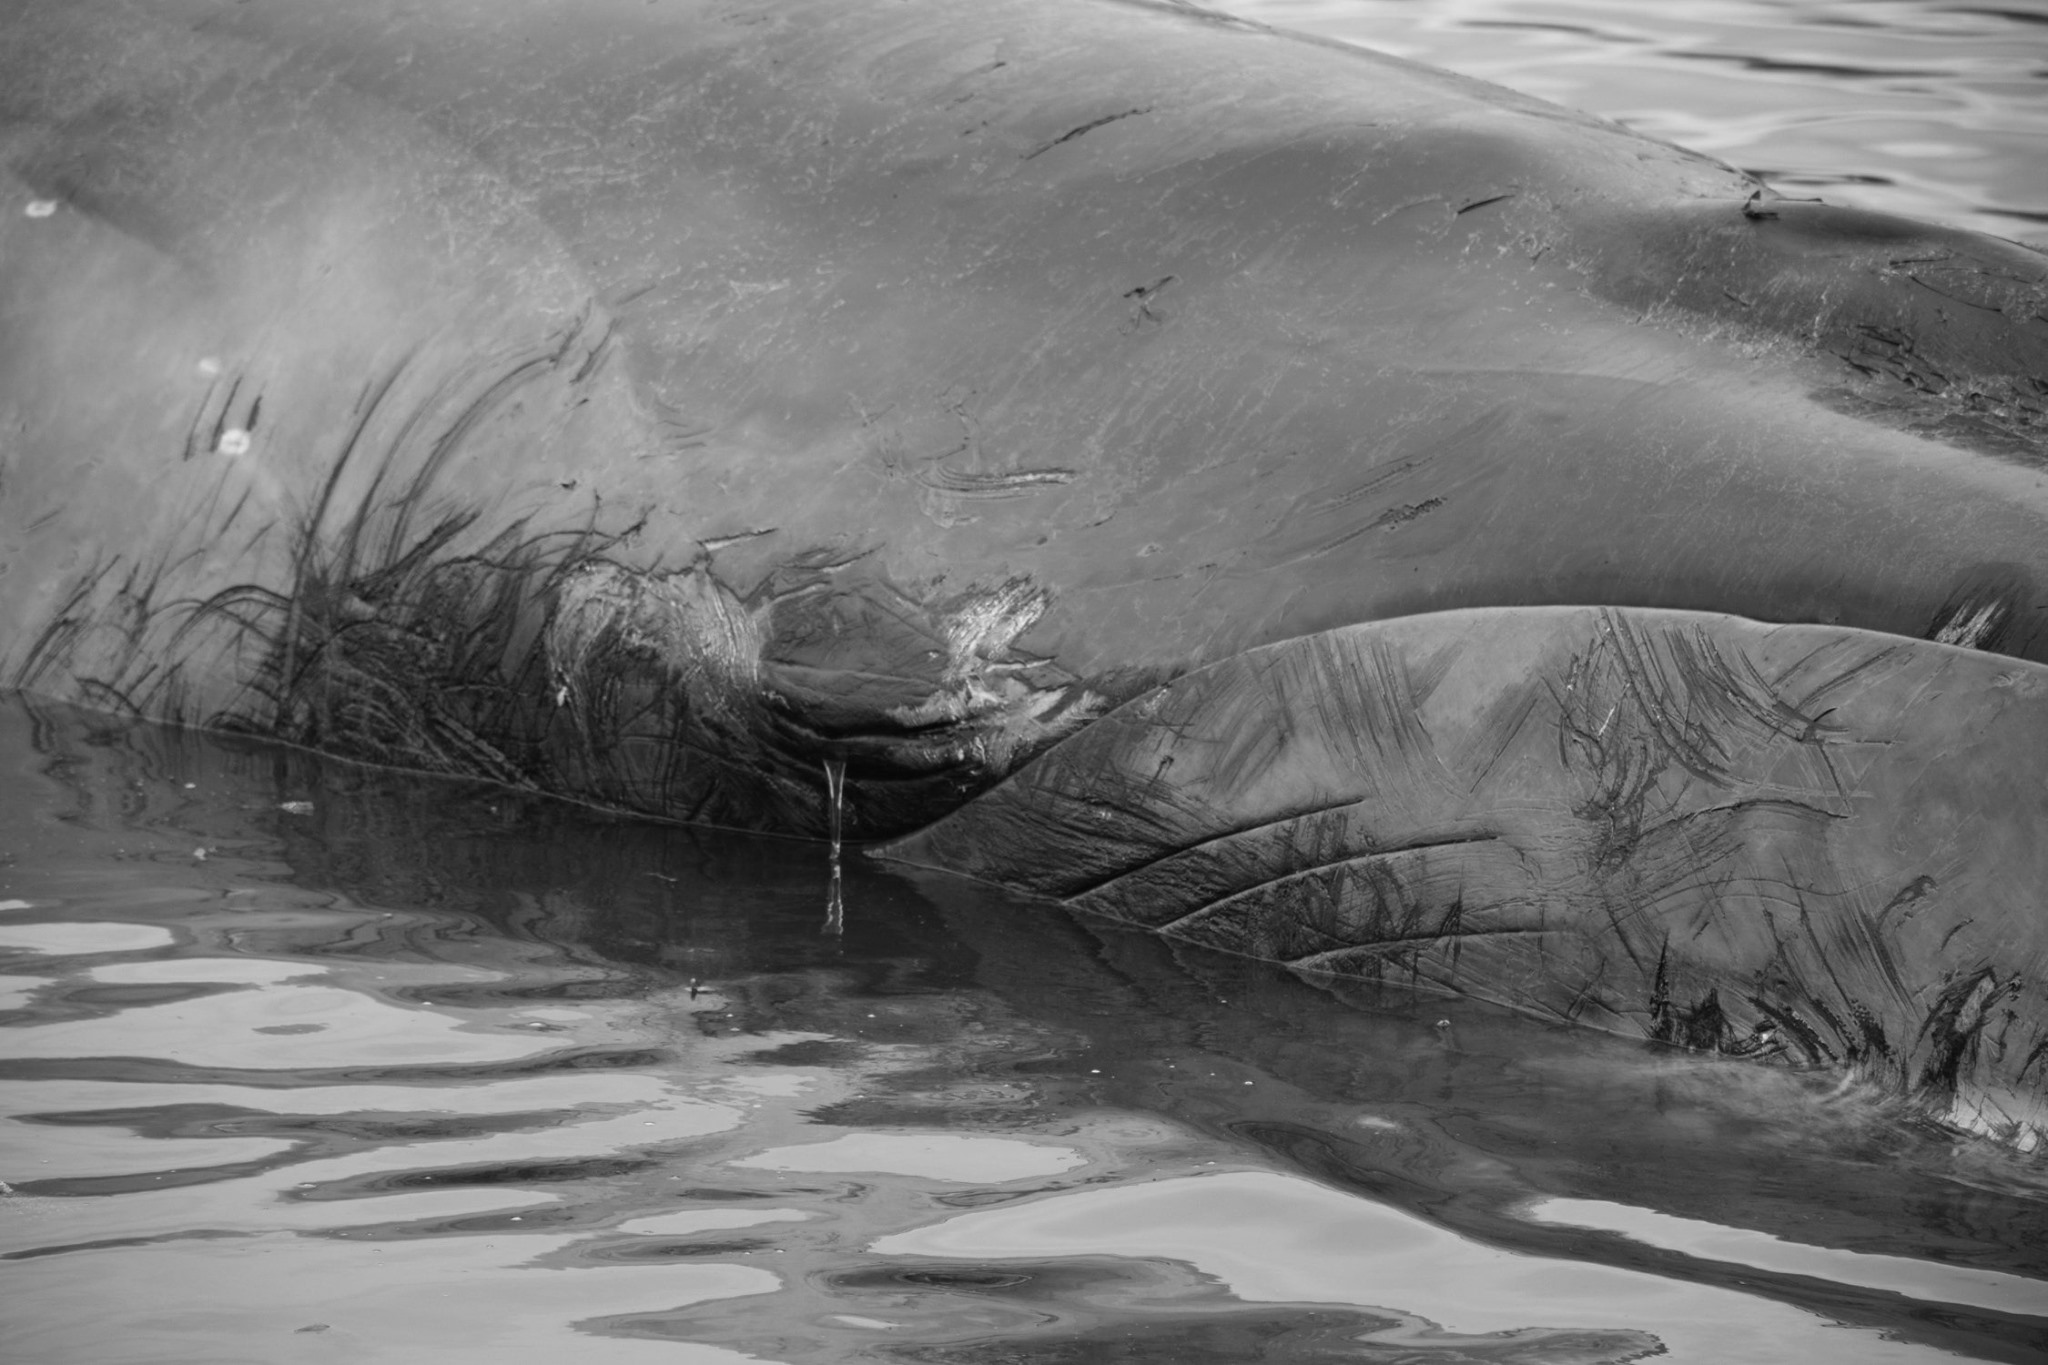 Hallazgo de tres ballenas sei atacadas por orcas en la bahía de Puerto Williams